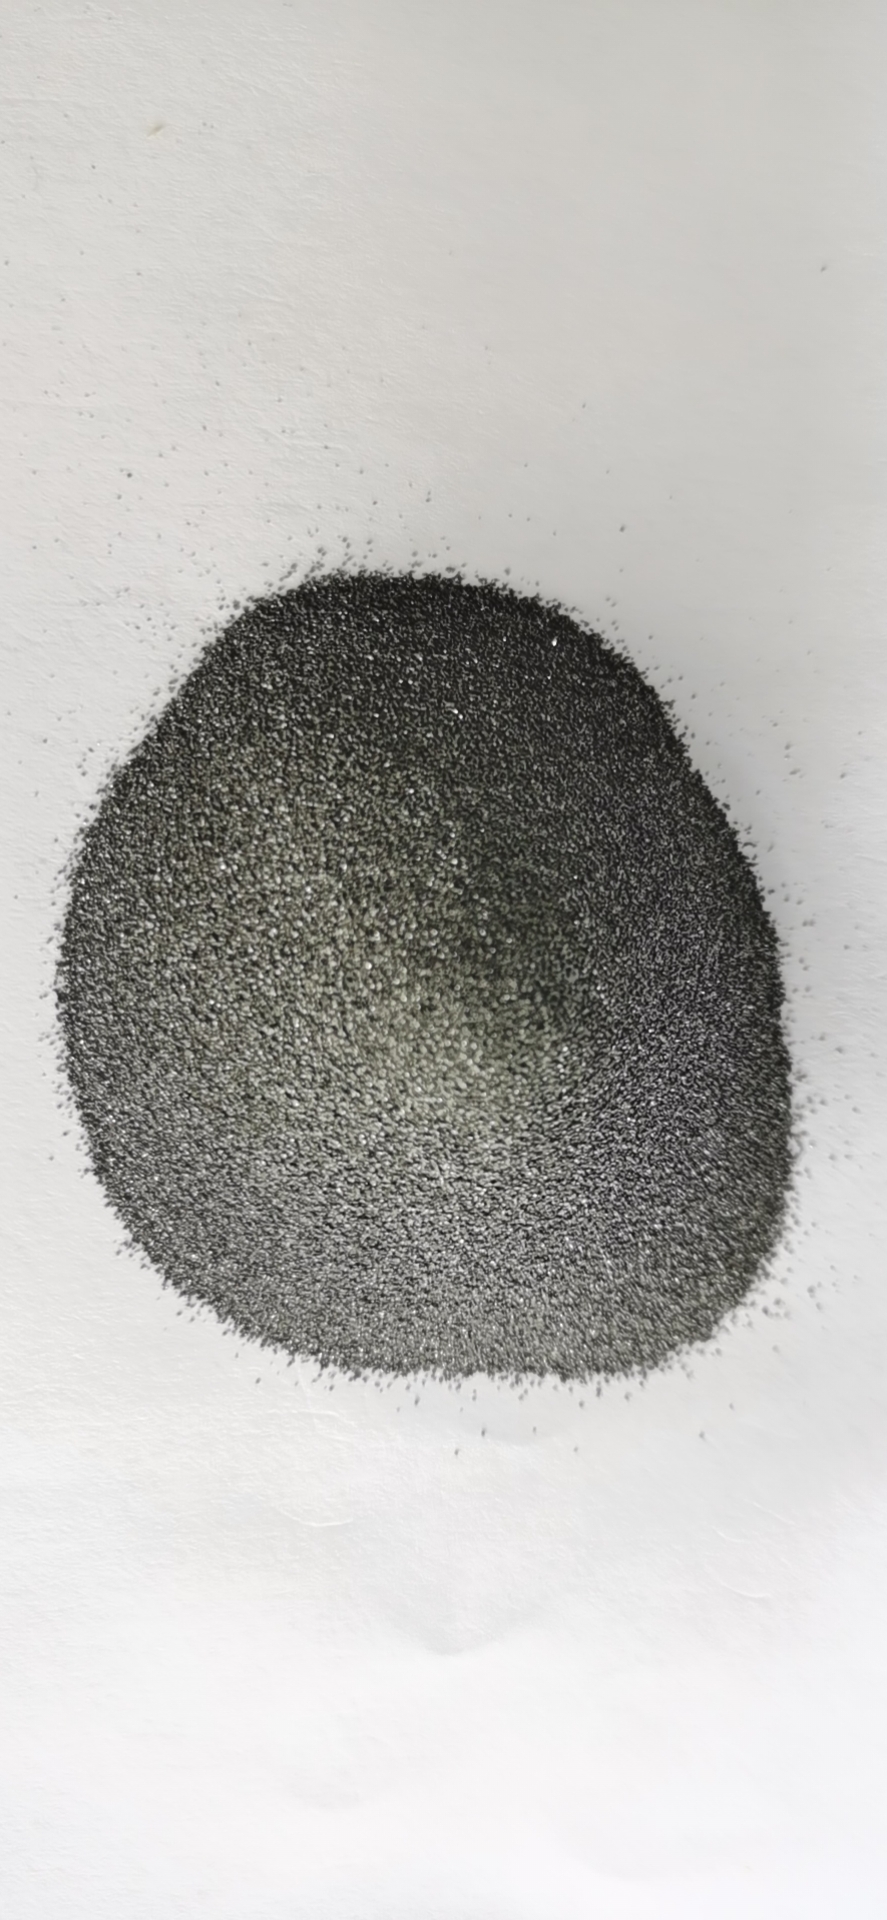 チタンカーバイド 炭化チタン粉末 - (粗粒度)FTiC-4 